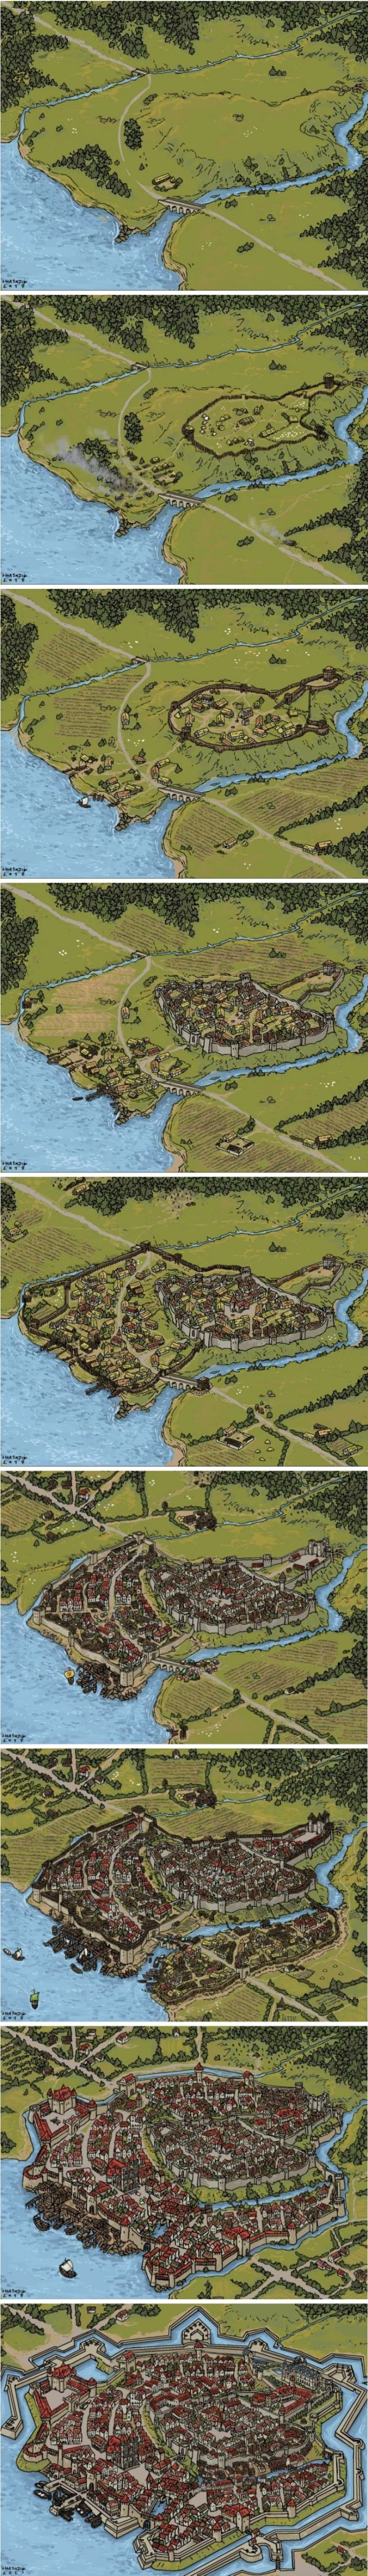 썸네일-중세시대 마을 발전 과정.jpg-이미지